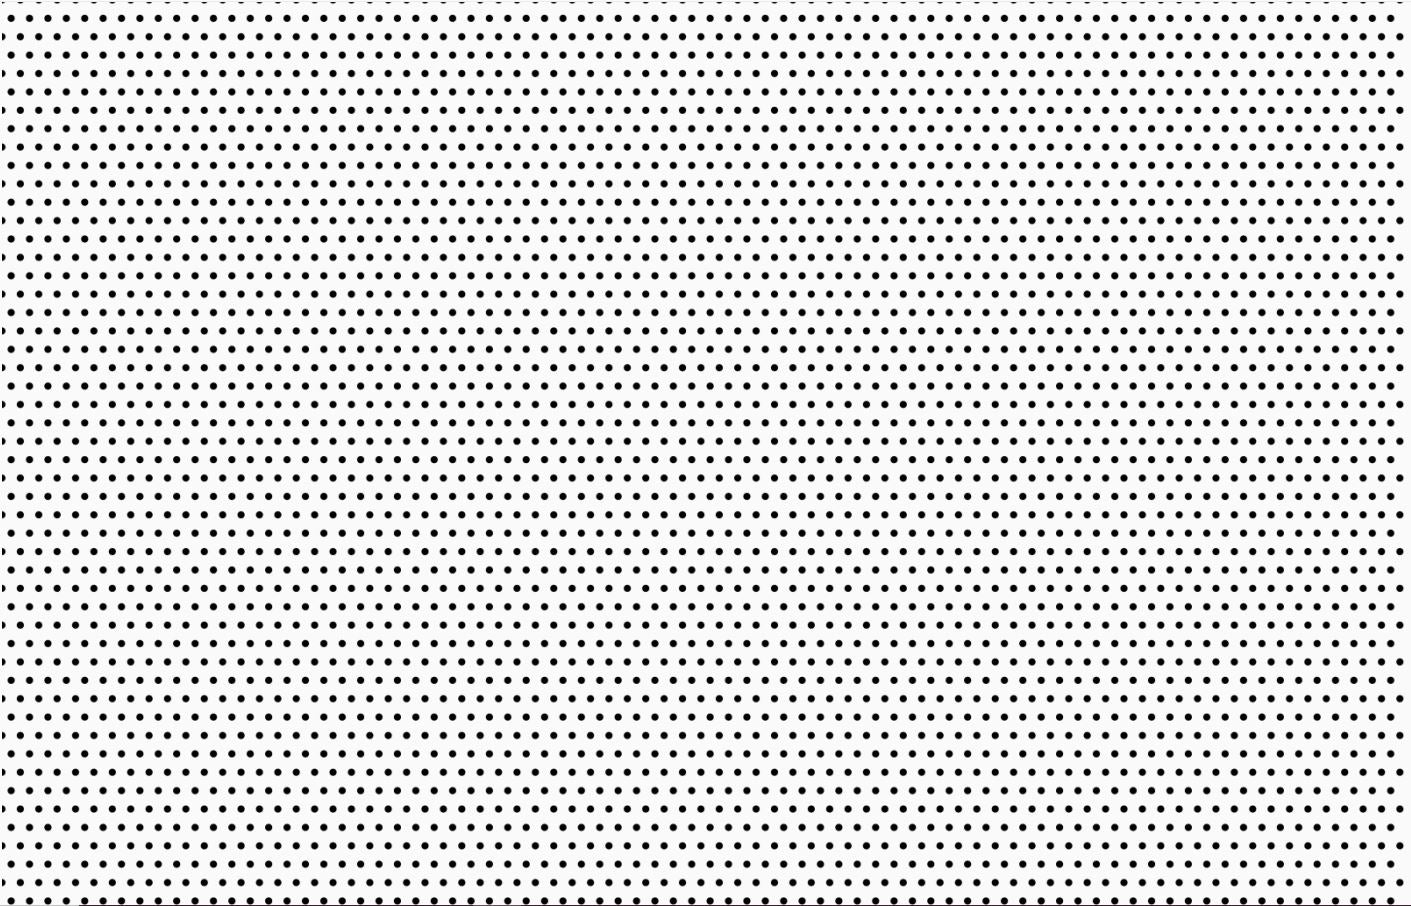 White & Black Polka Dots